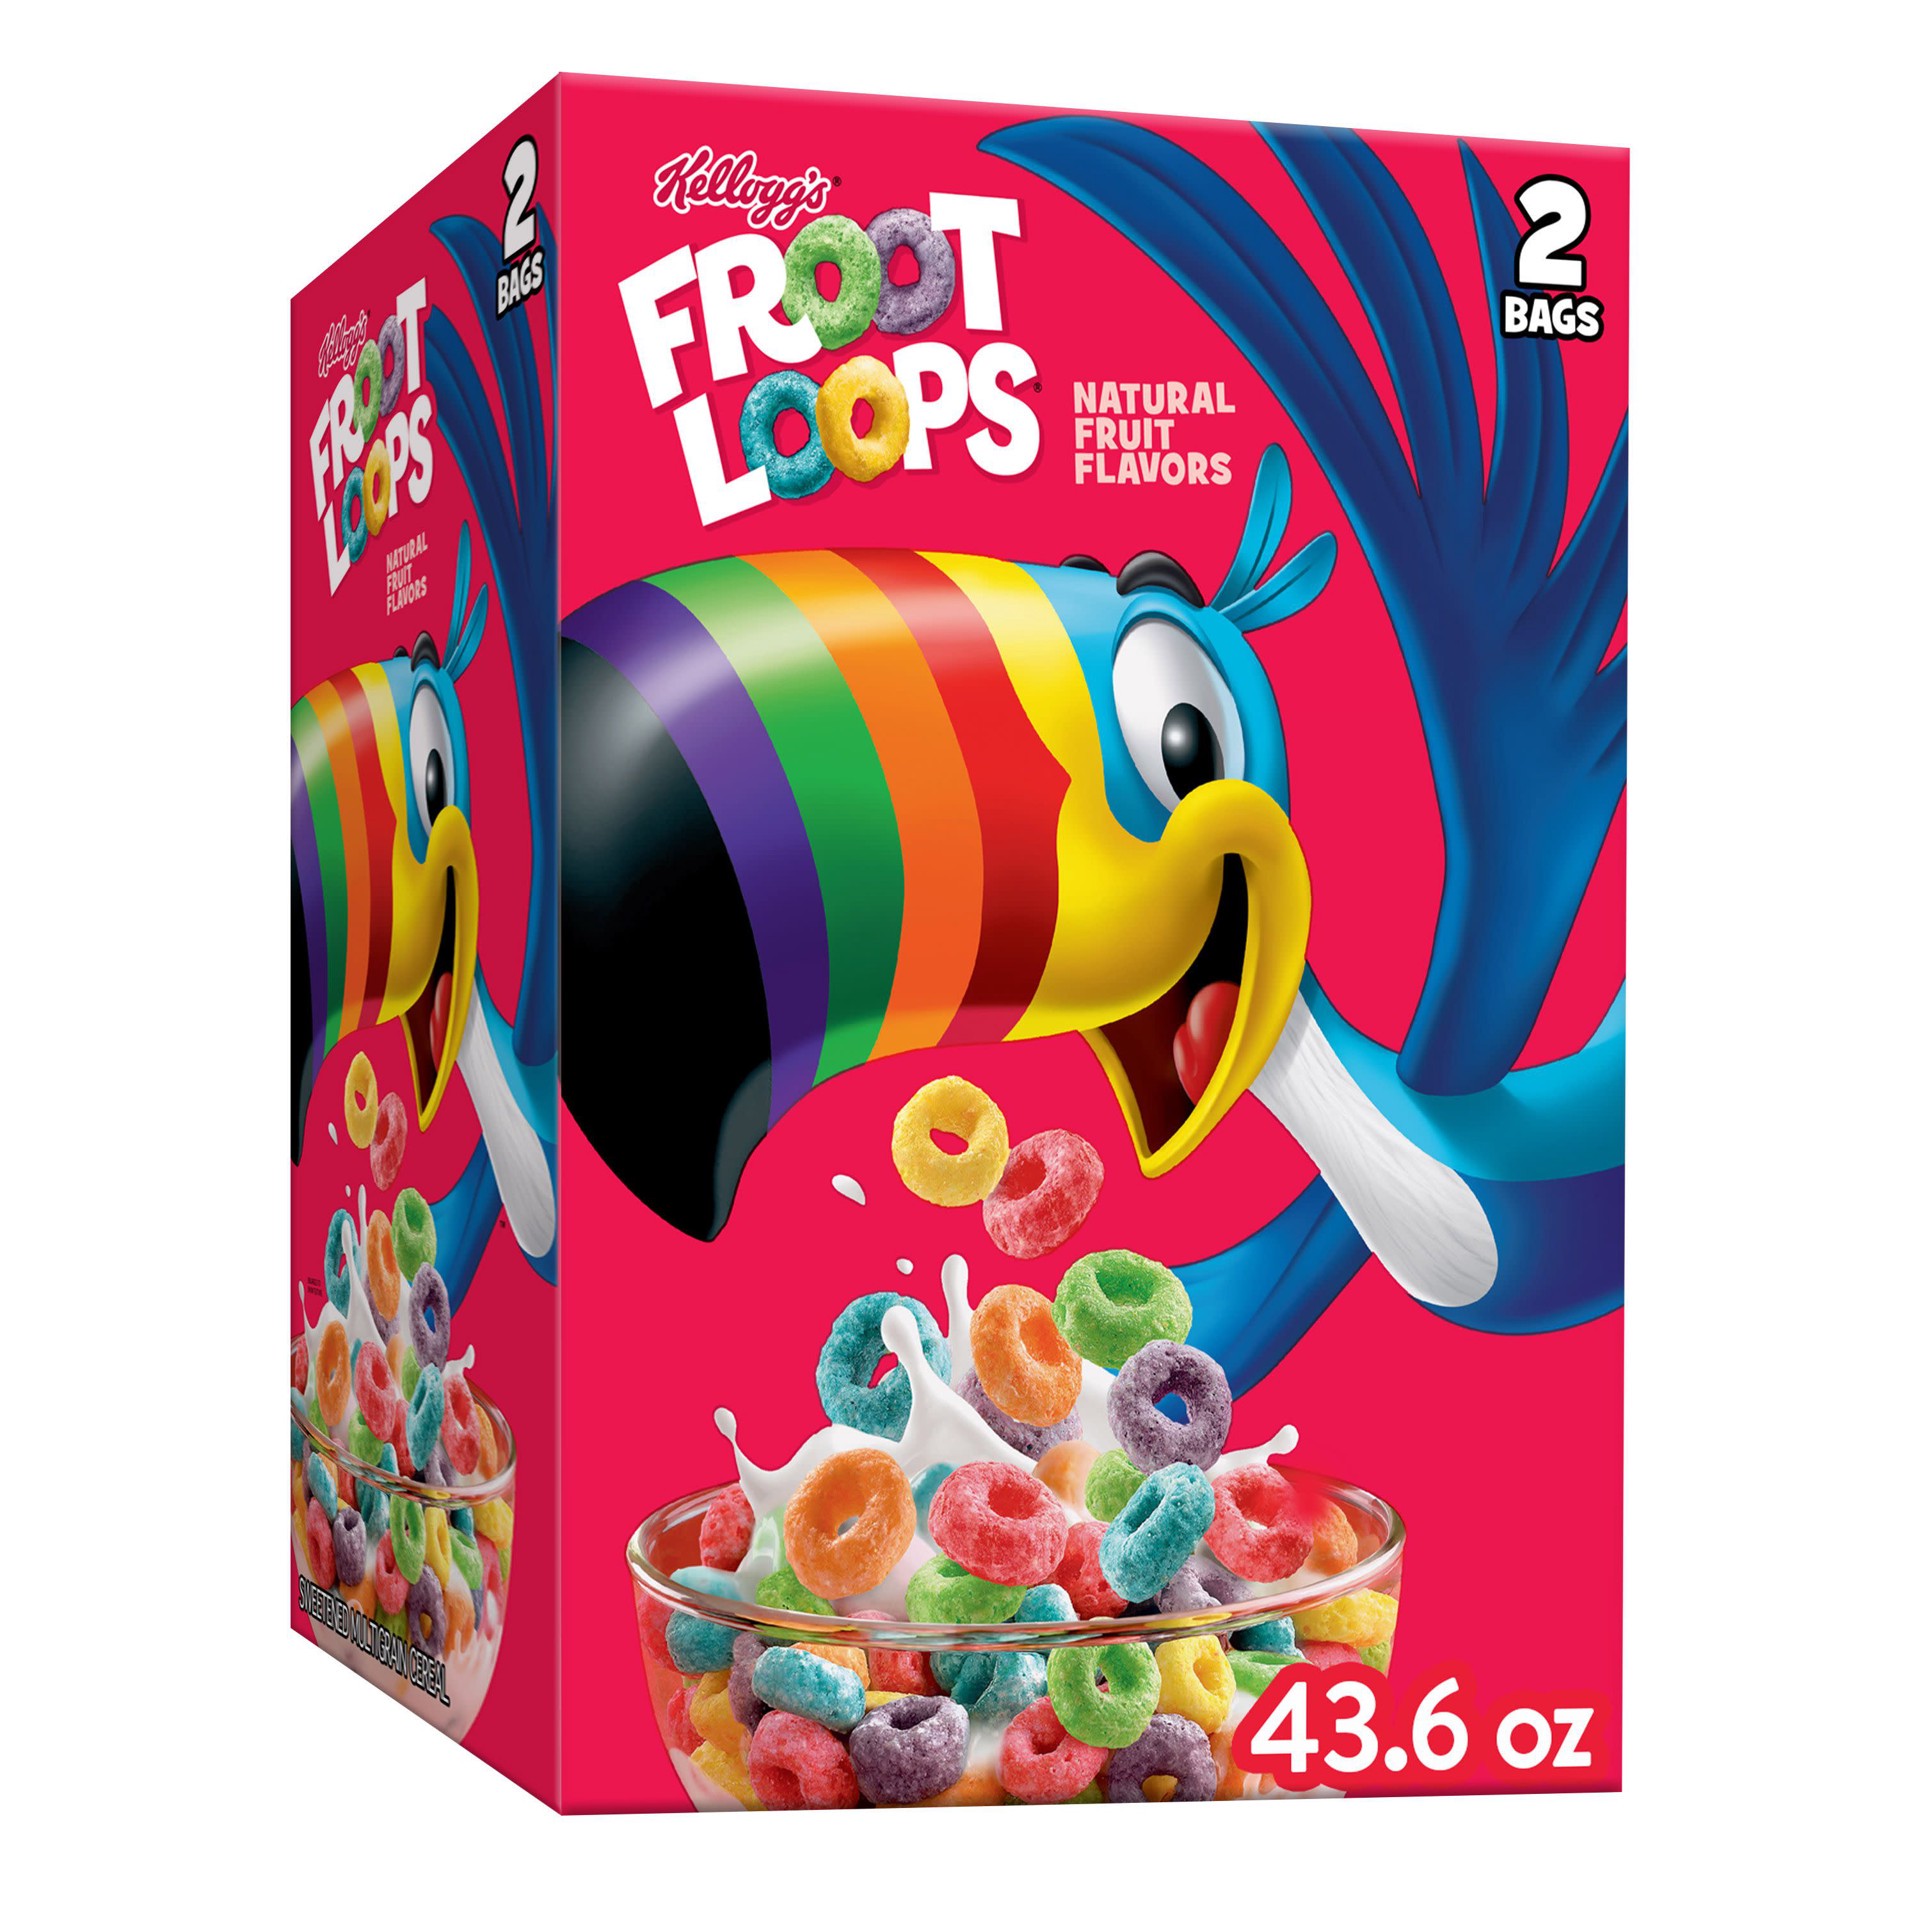 slide 1 of 5, Froot Loops Kellogg's Froot Loops Breakfast Cereal, Kids Cereal, Family Breakfast, Original, 43.6oz Box, 2 Bags, 43.6 oz